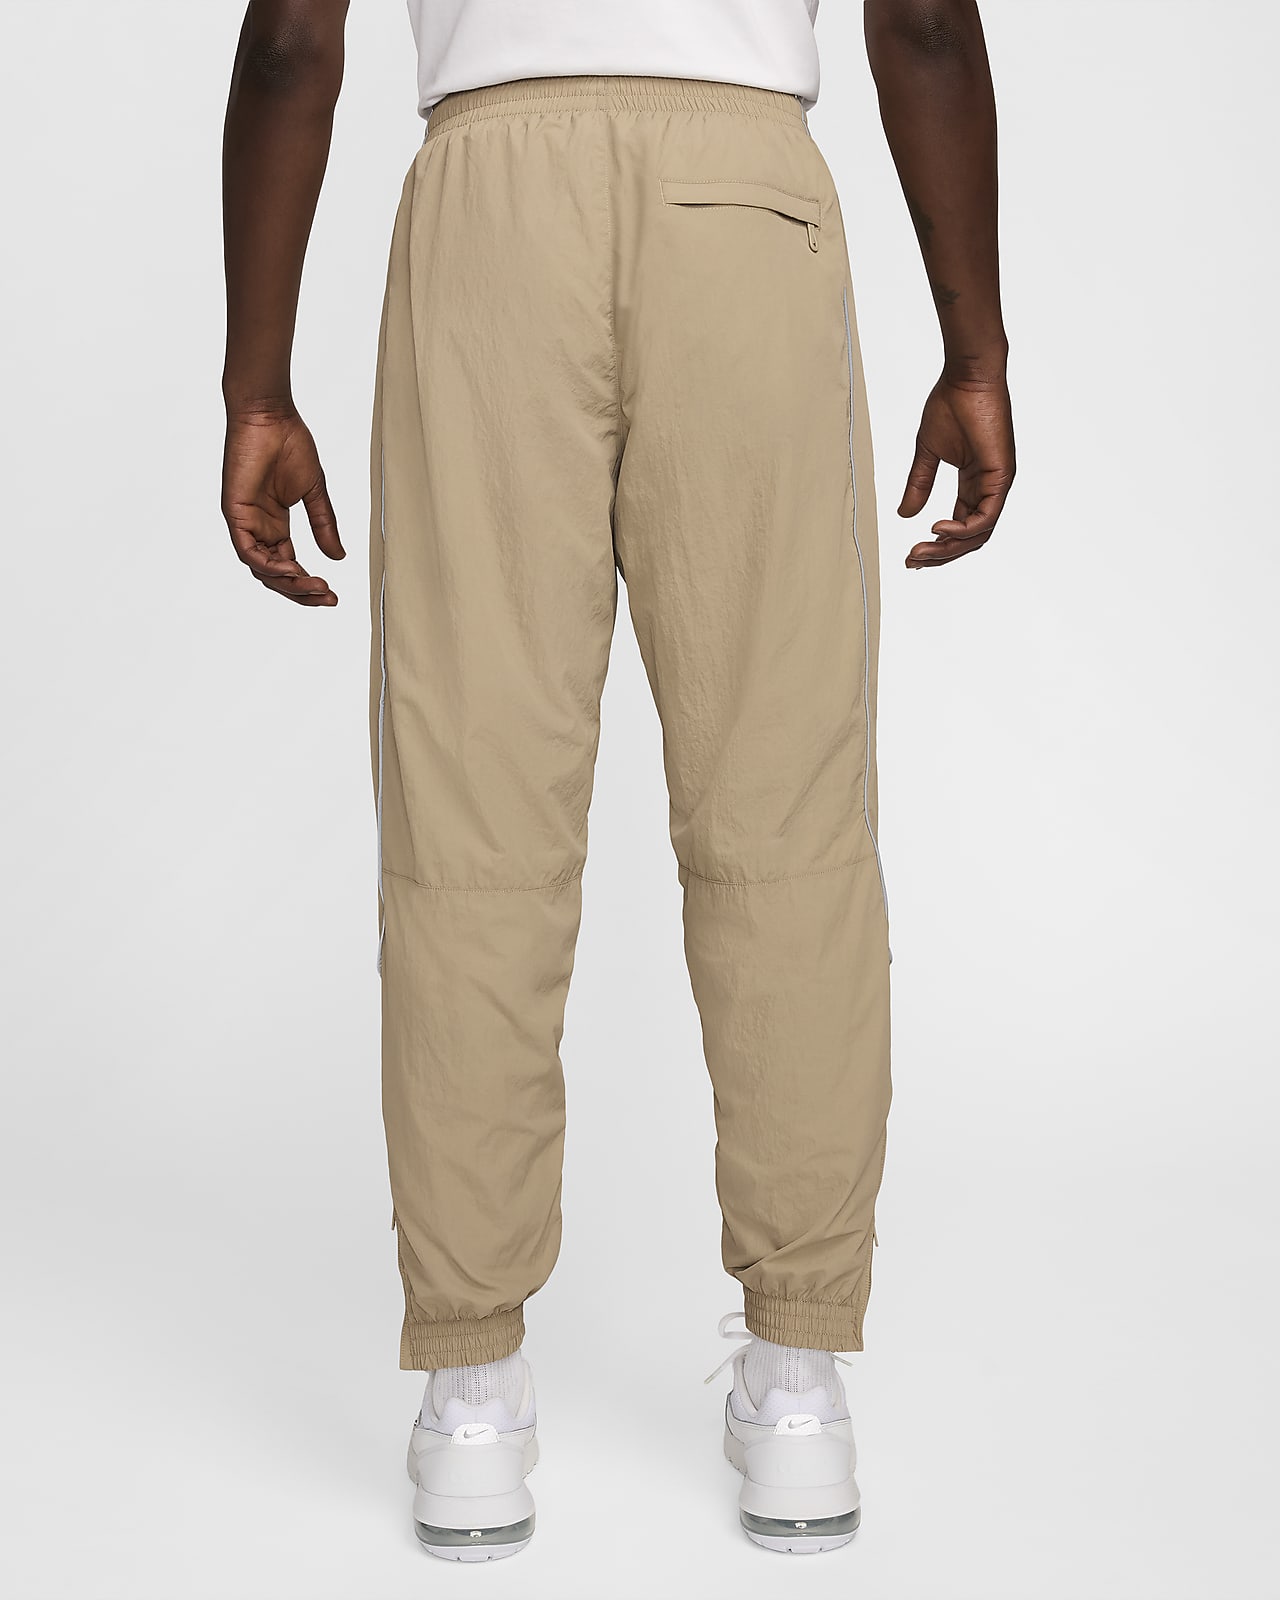 Nike Solo Swoosh Men's Track Pants. Nike.com